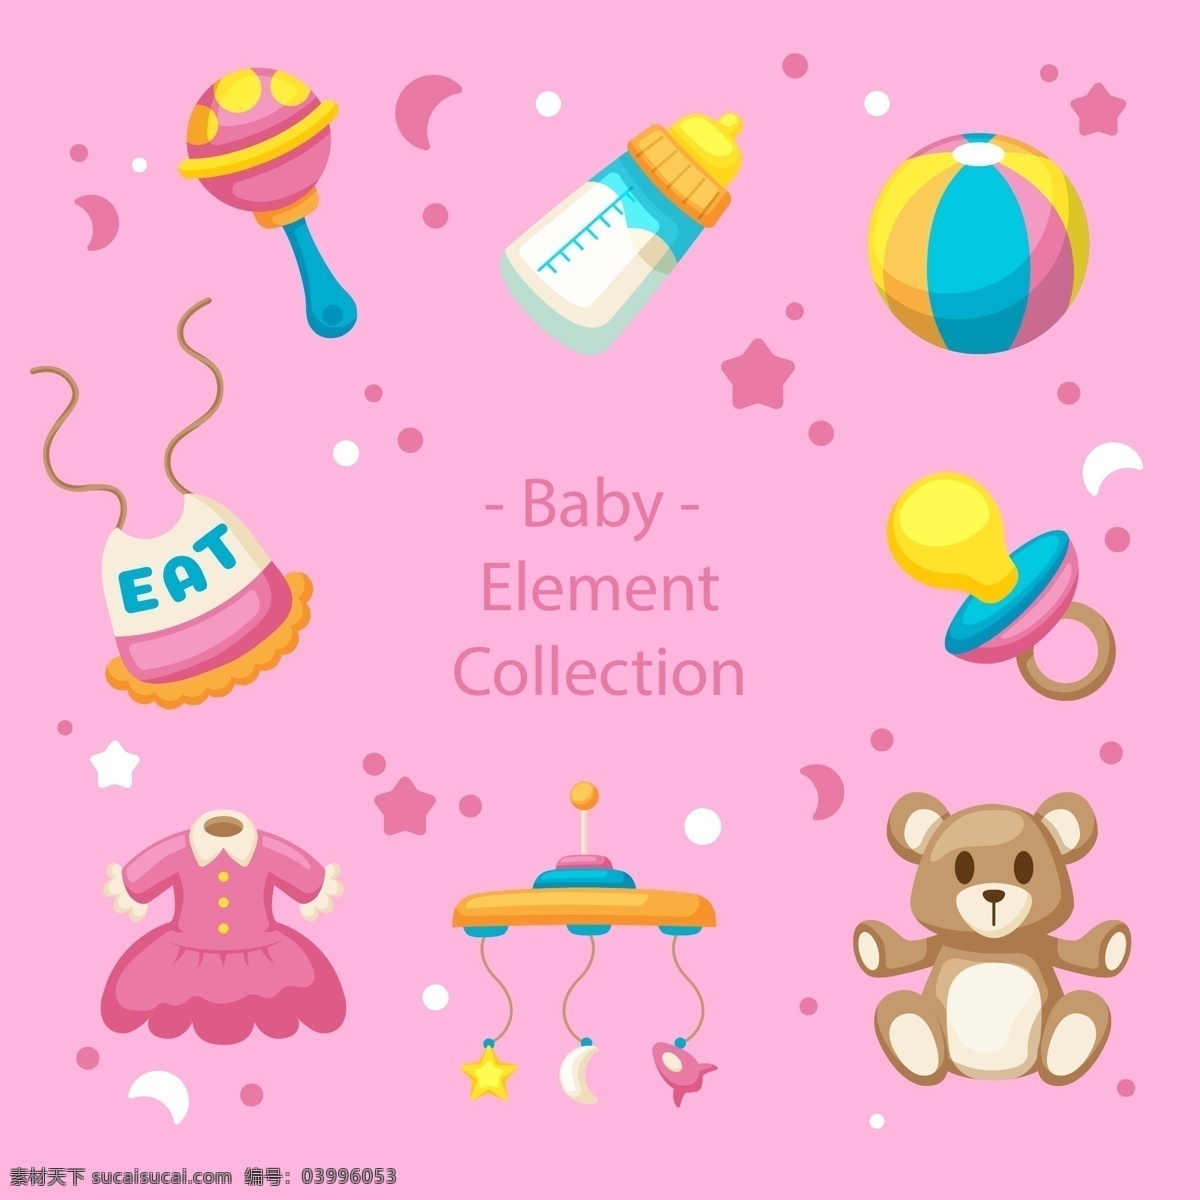 婴儿元素相关 新生儿 宝宝 幼儿 母婴 满月 手绘 卡通 可爱 奶瓶 小黄鸭 玩具 衣服 摇铃 围嘴 围兜 奶嘴